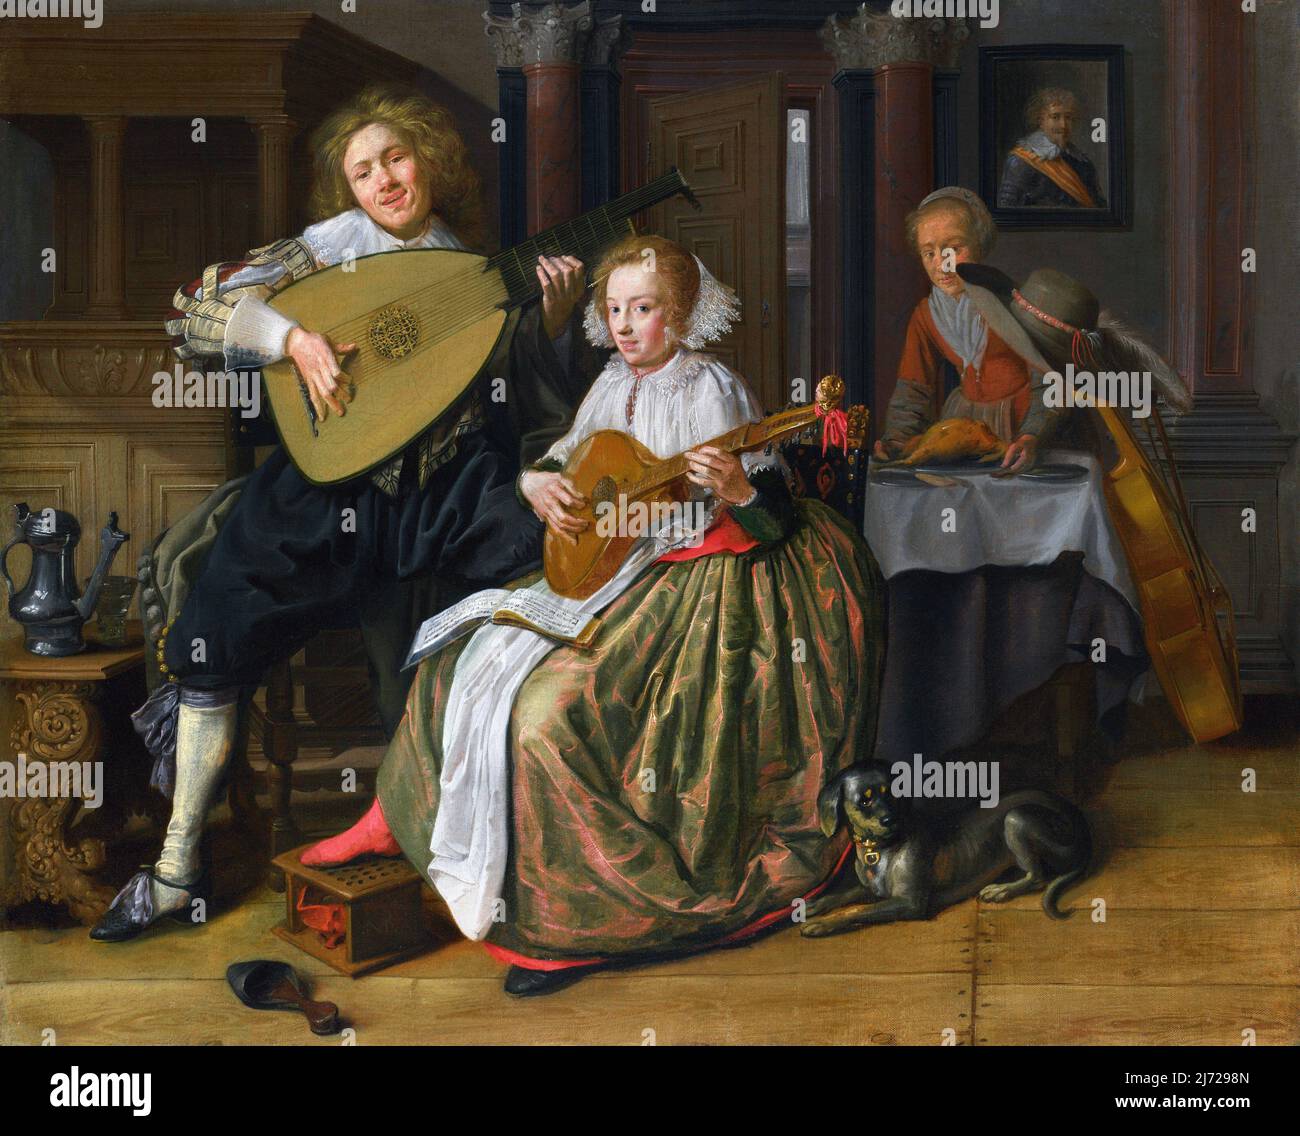 Ein junger Mann, der einen Theorbo spielt, und eine junge Frau, die eine Zitterfigur spielt, vom niederländischen Maler des Goldenen Zeitalters, Jan Miense Molenaer (1610-1668), Öl auf Leinwand, c. 1630-32 Stockfoto